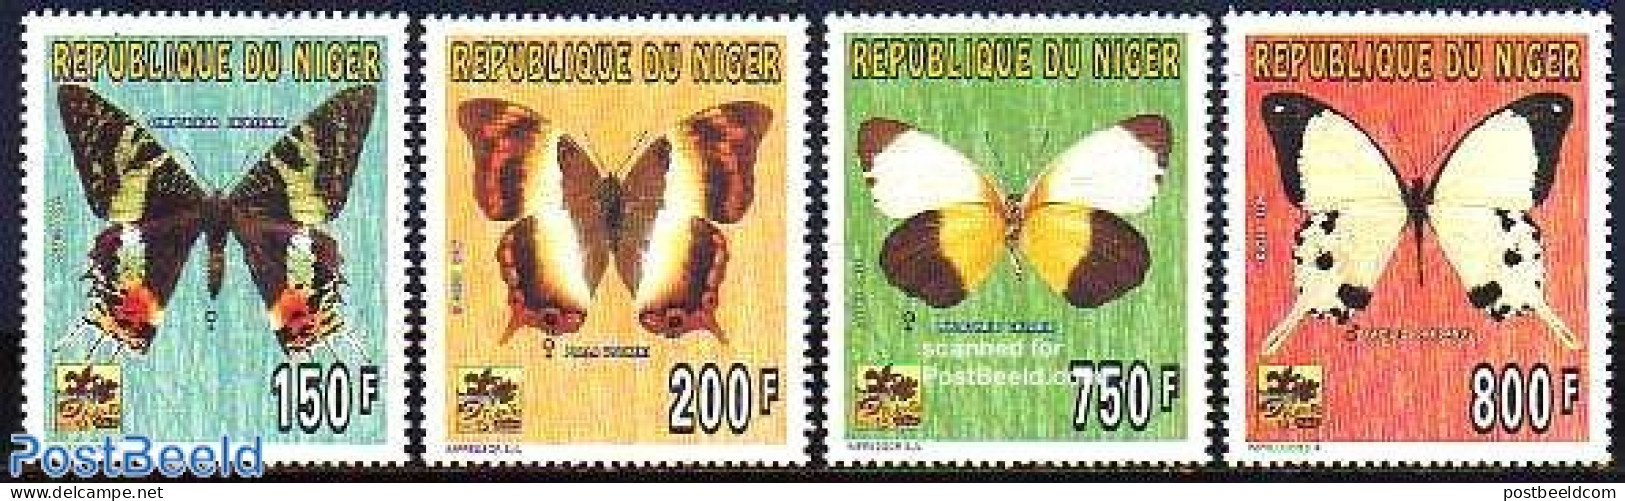 Niger 1996 World Jamboree Netherlands 4v, Butterflies, Mint NH, History - Nature - Sport - Netherlands & Dutch - Butte.. - Geography